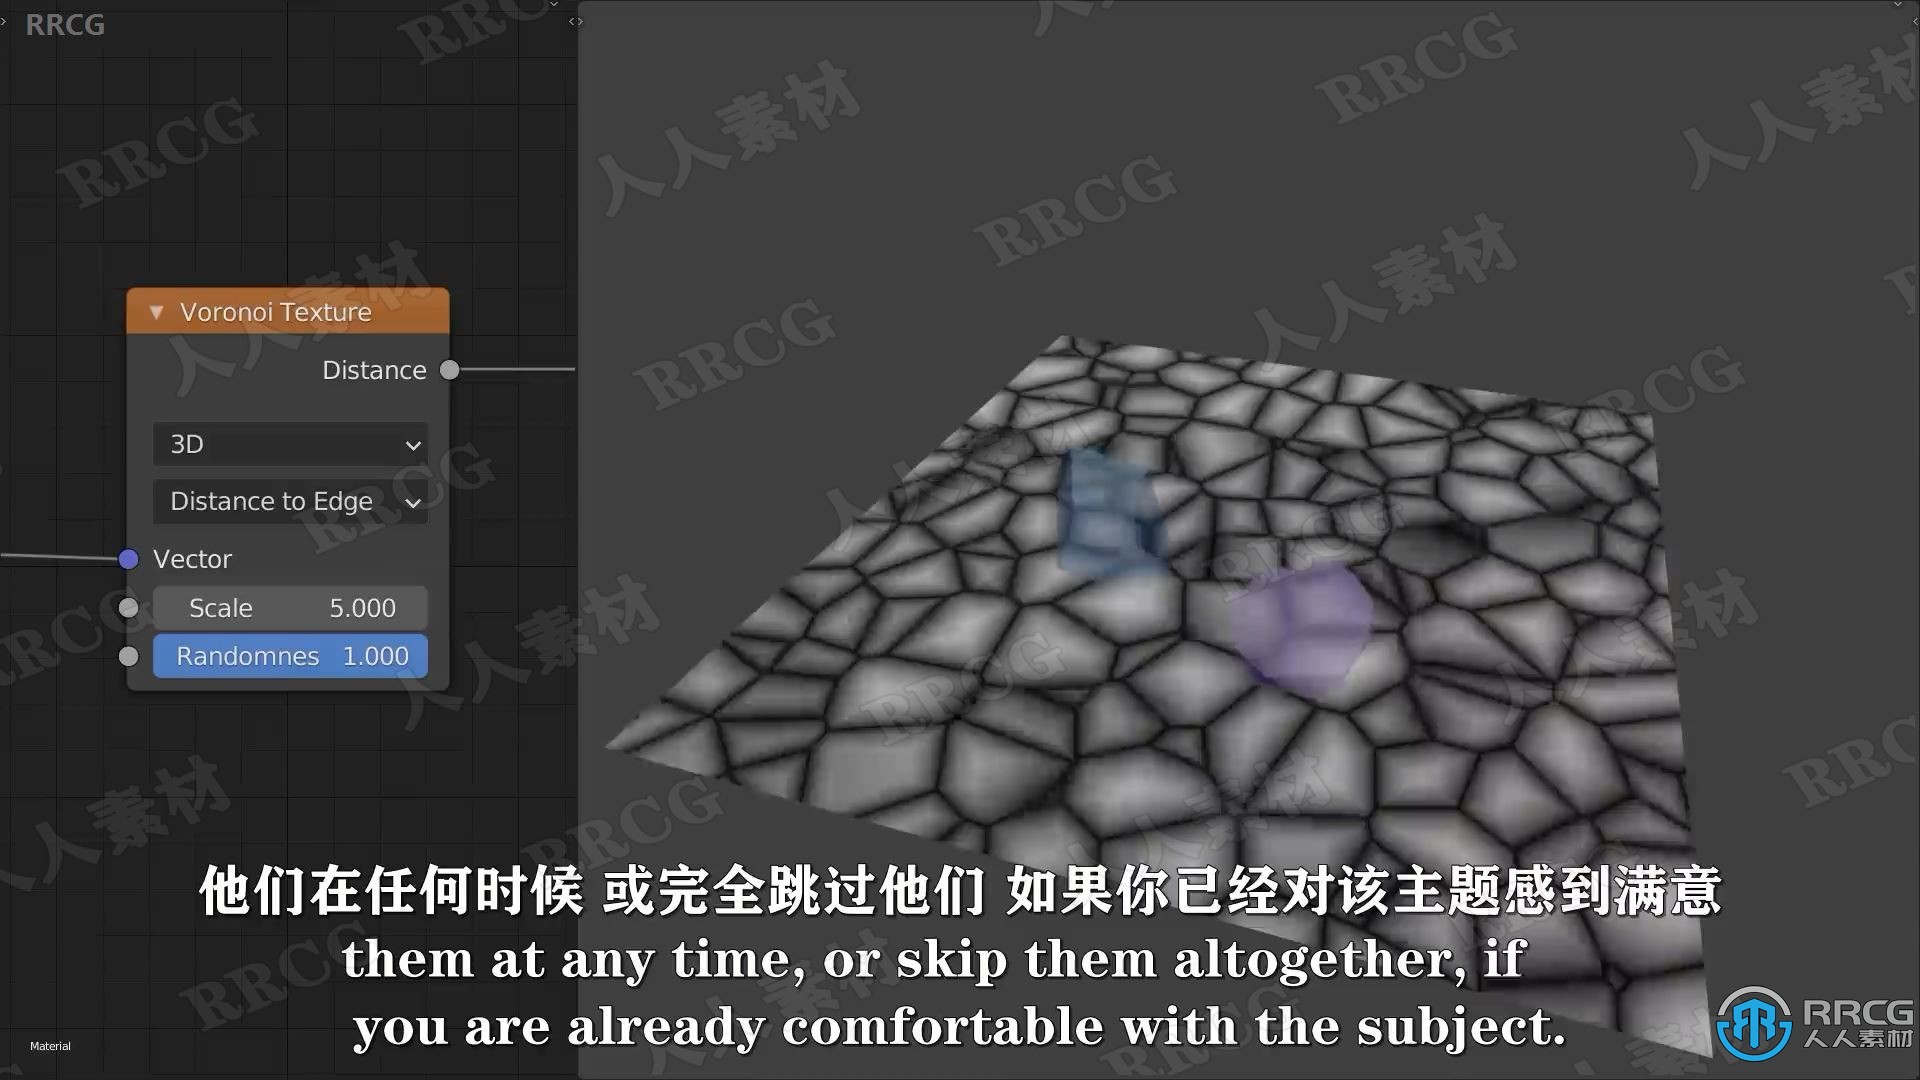 【中文字幕】Blender逼真苔藓墙程序化纹理制作工作流程视频教程